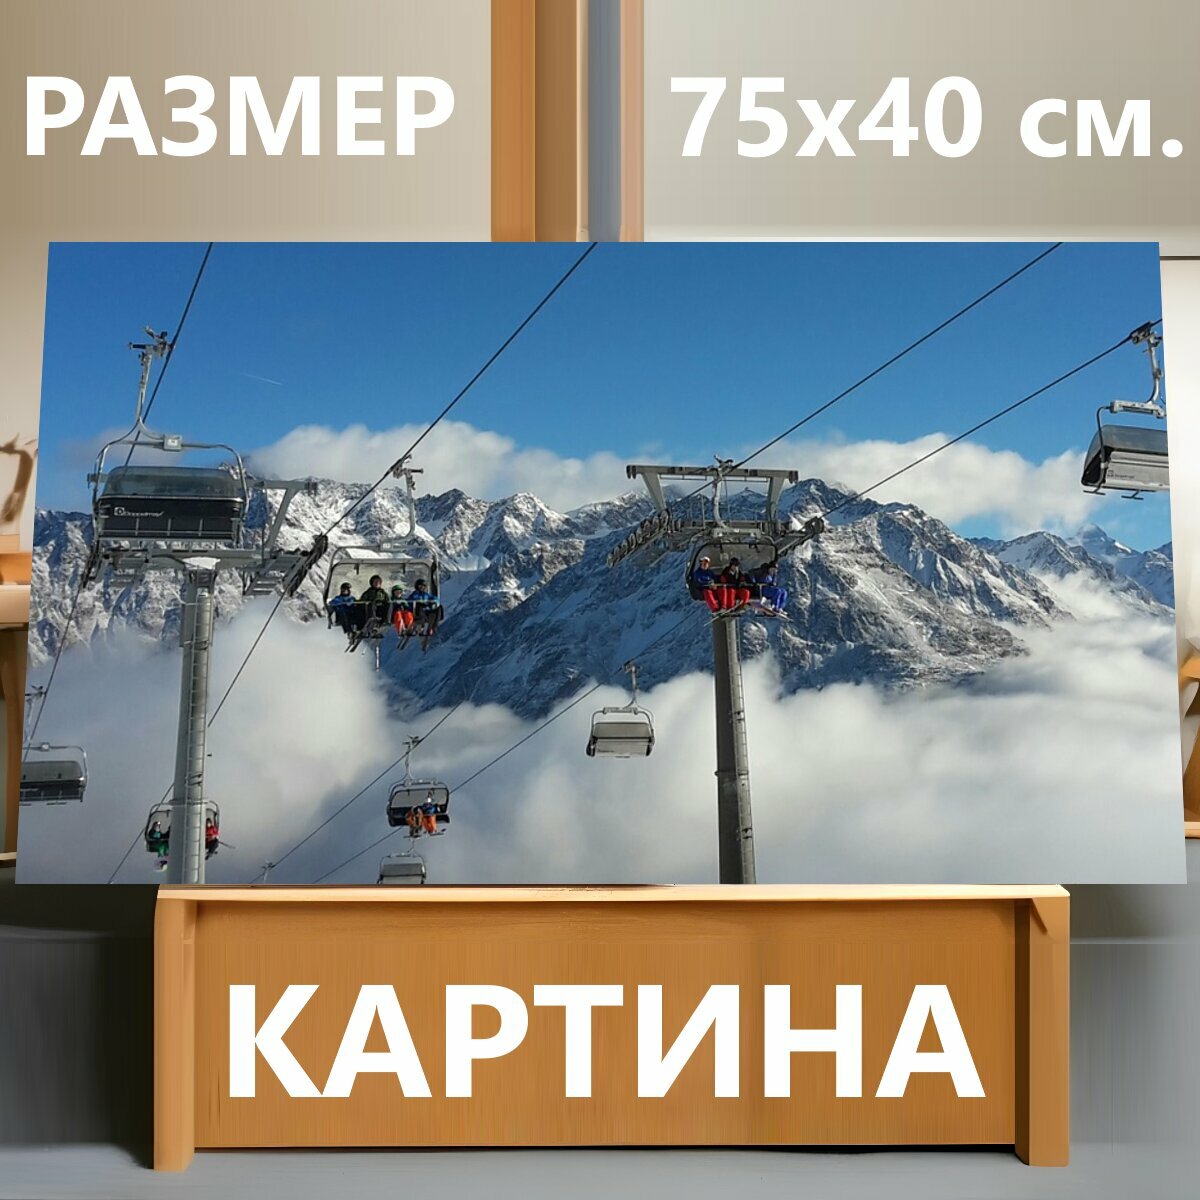 Картина на холсте "Альпы, лыжная зона, кресельная канатная дорога" на подрамнике 75х40 см. для интерьера